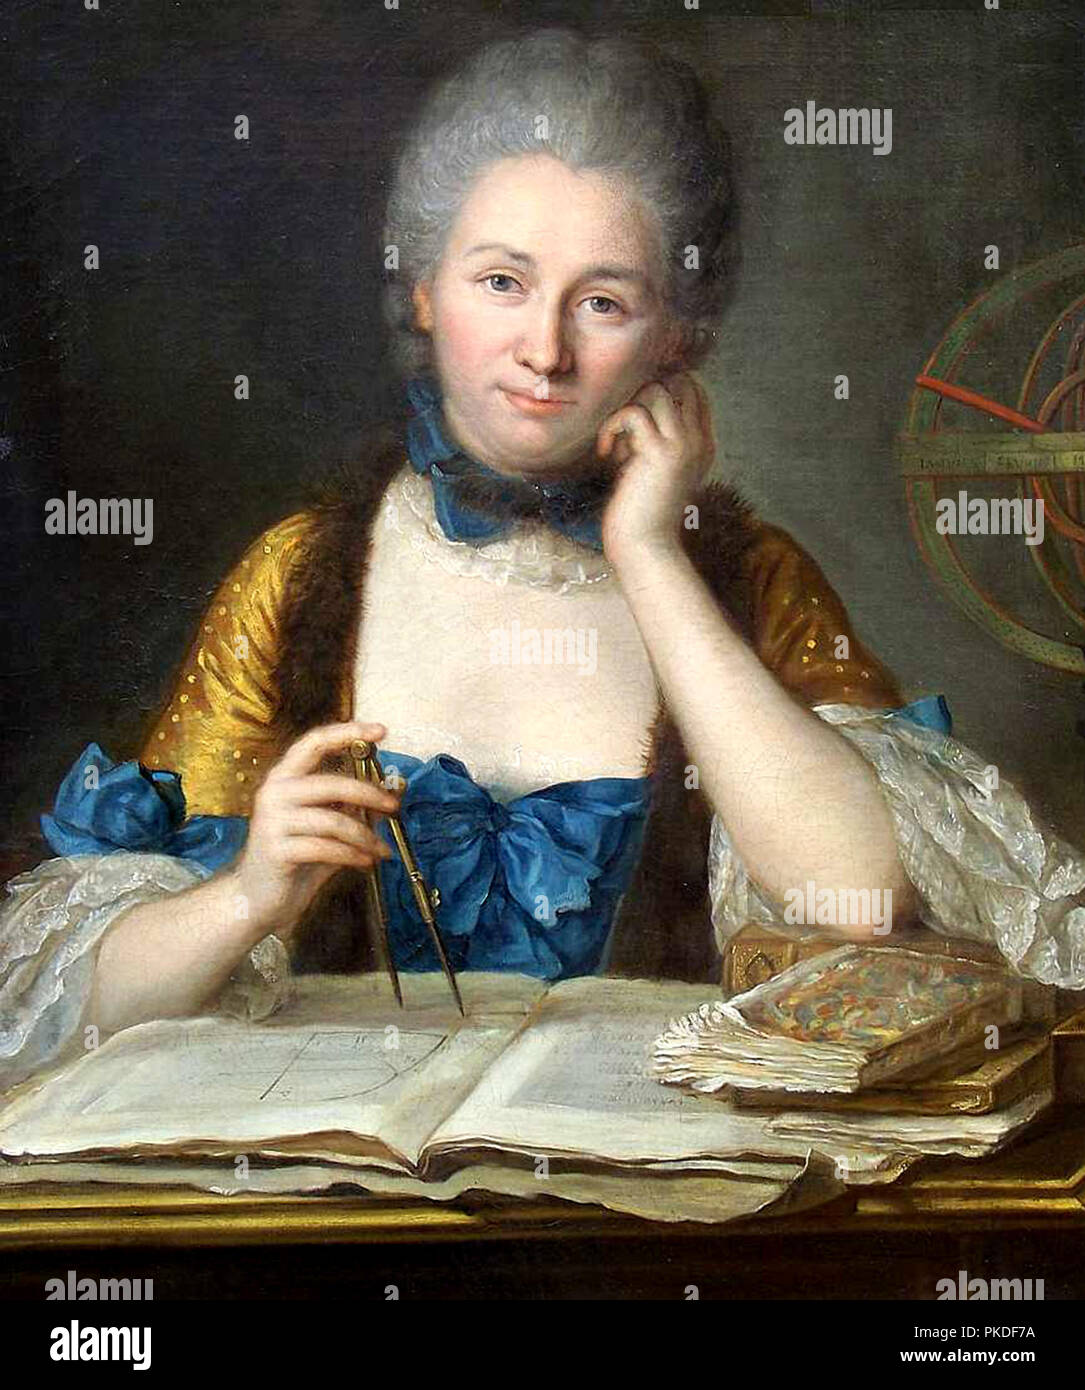 Émilie du Châtelet, Gabrielle Émilie Le Tonnelier de Breteuil, marquise du Châtelet (1706-1749), French mathematician and physicist. Painting by Maurice Quentin de La Tour Stock Photo